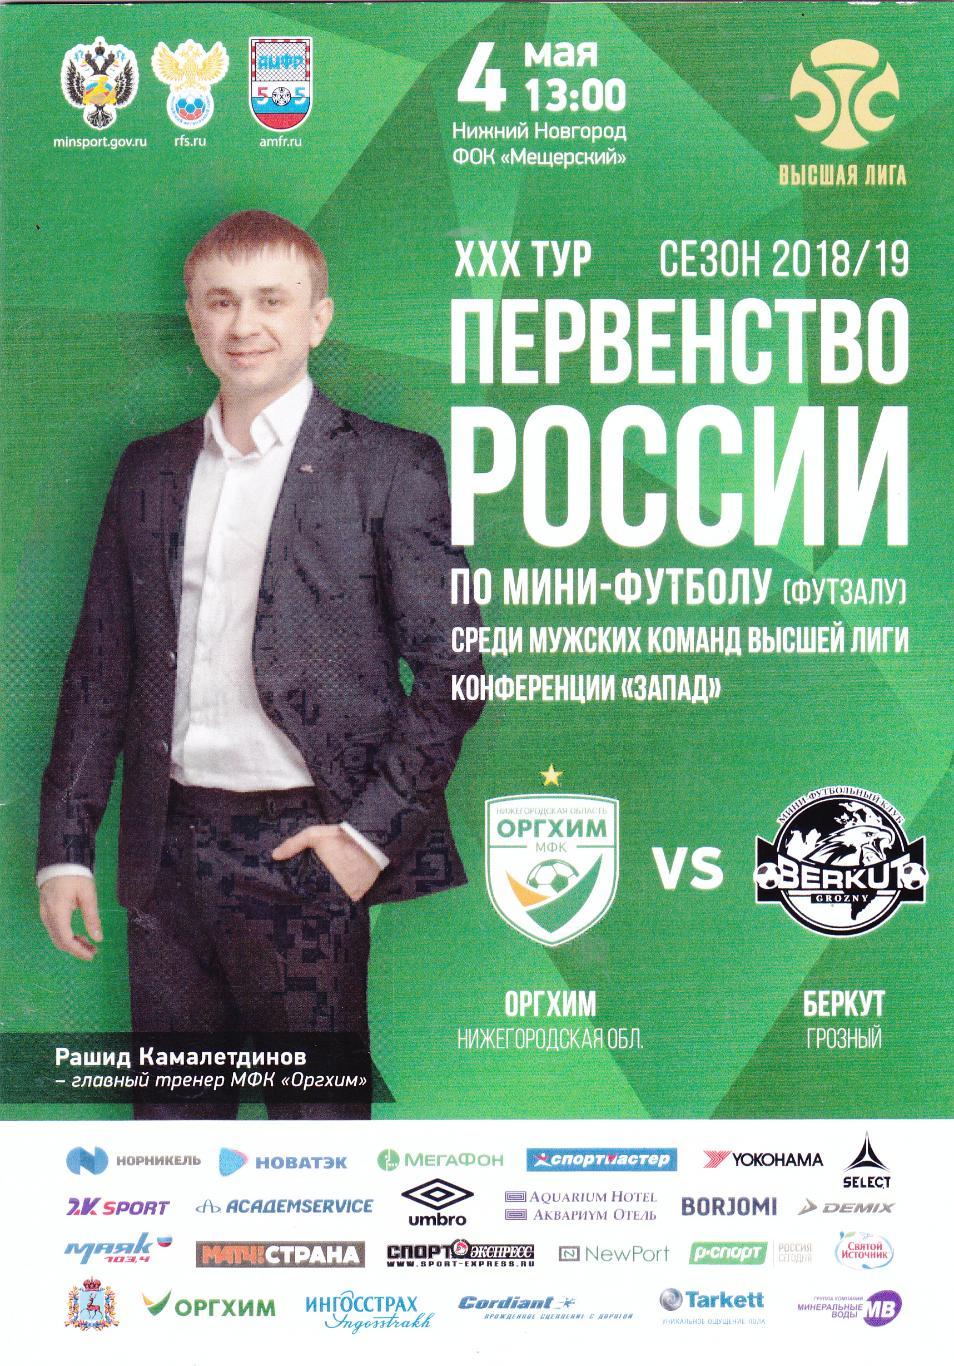 Оргхим (Ниж.Новгород) - Беркут (Грозный) 04.05.2019